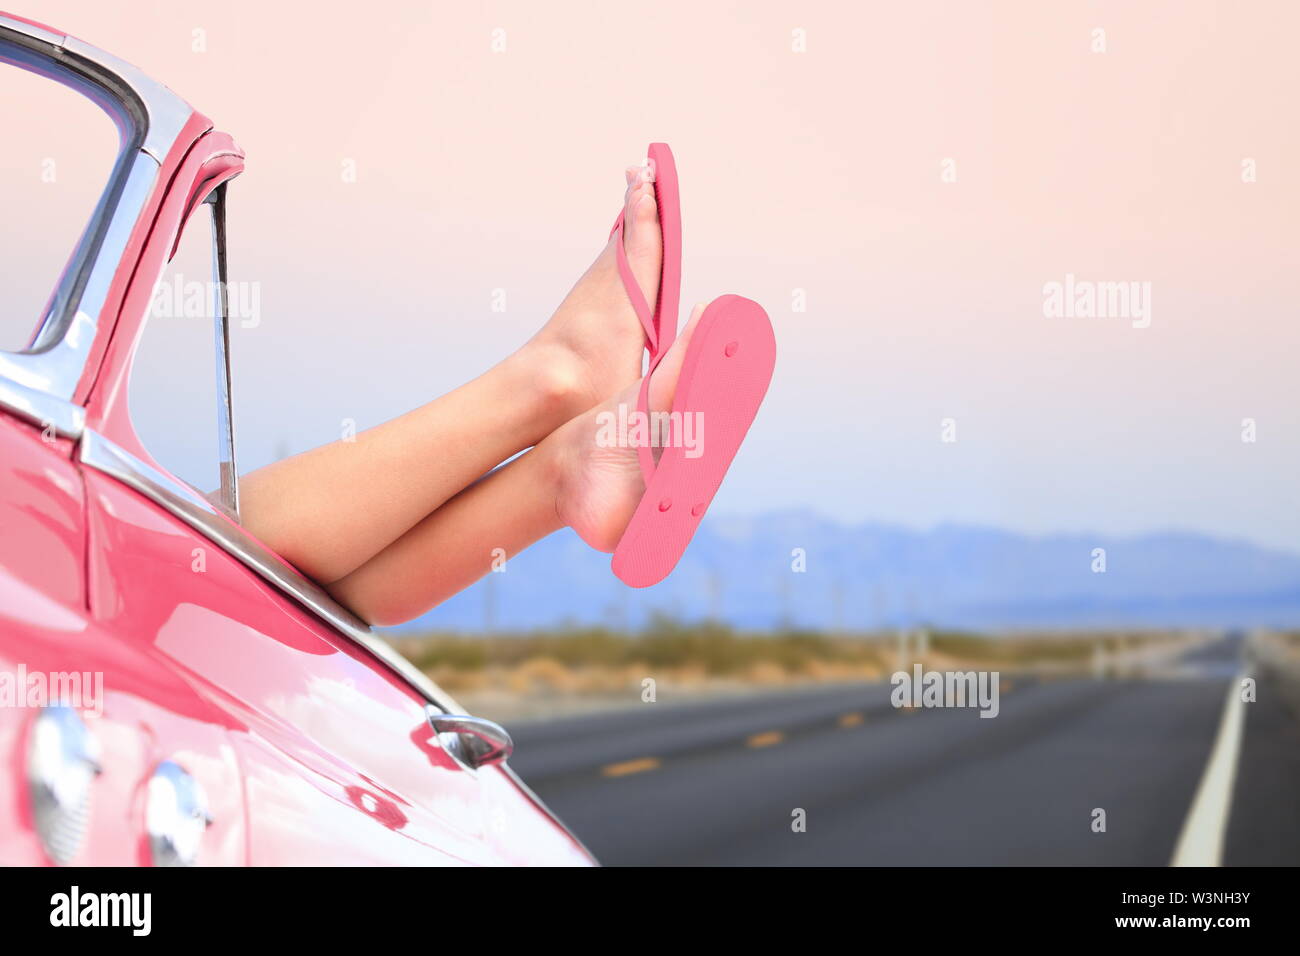 La liberté de voyage voiture concept - woman relaxing with pieds hors de la fenêtre en market cool. Girl relaxing profitant de vacances voyage. Banque D'Images